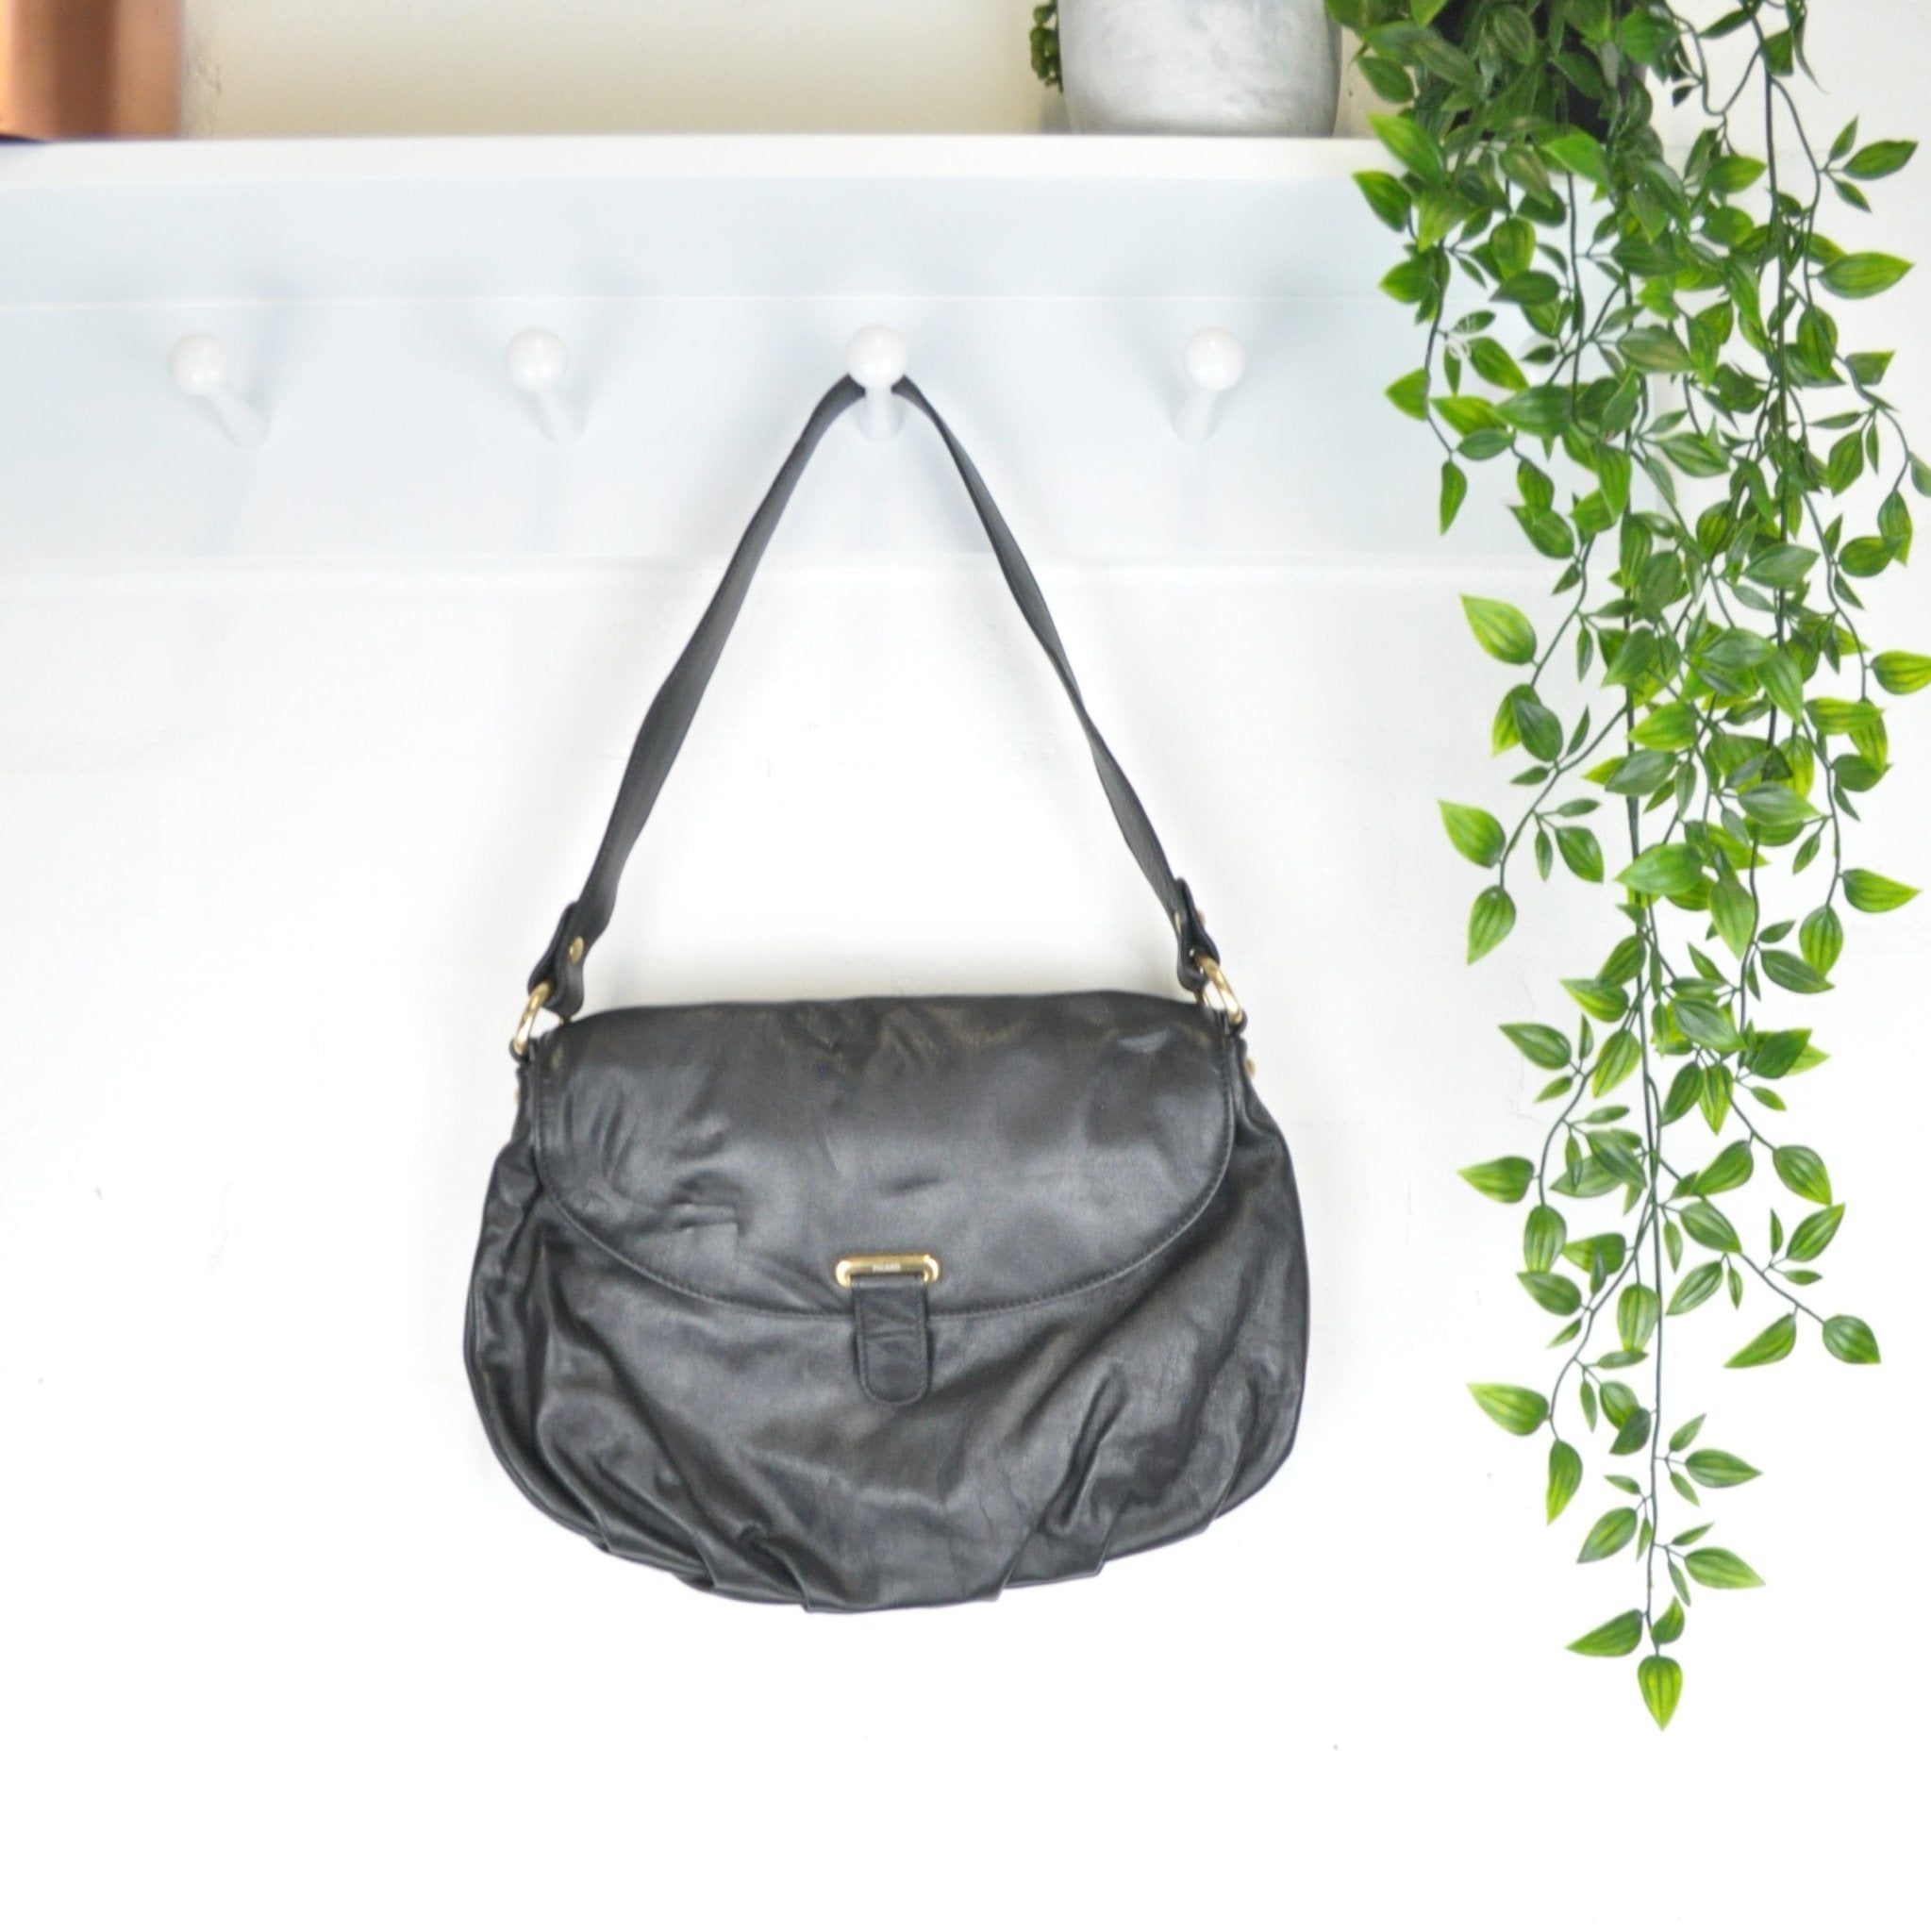 Hobo International Shoulder Bag Purse Black Leather Y2K